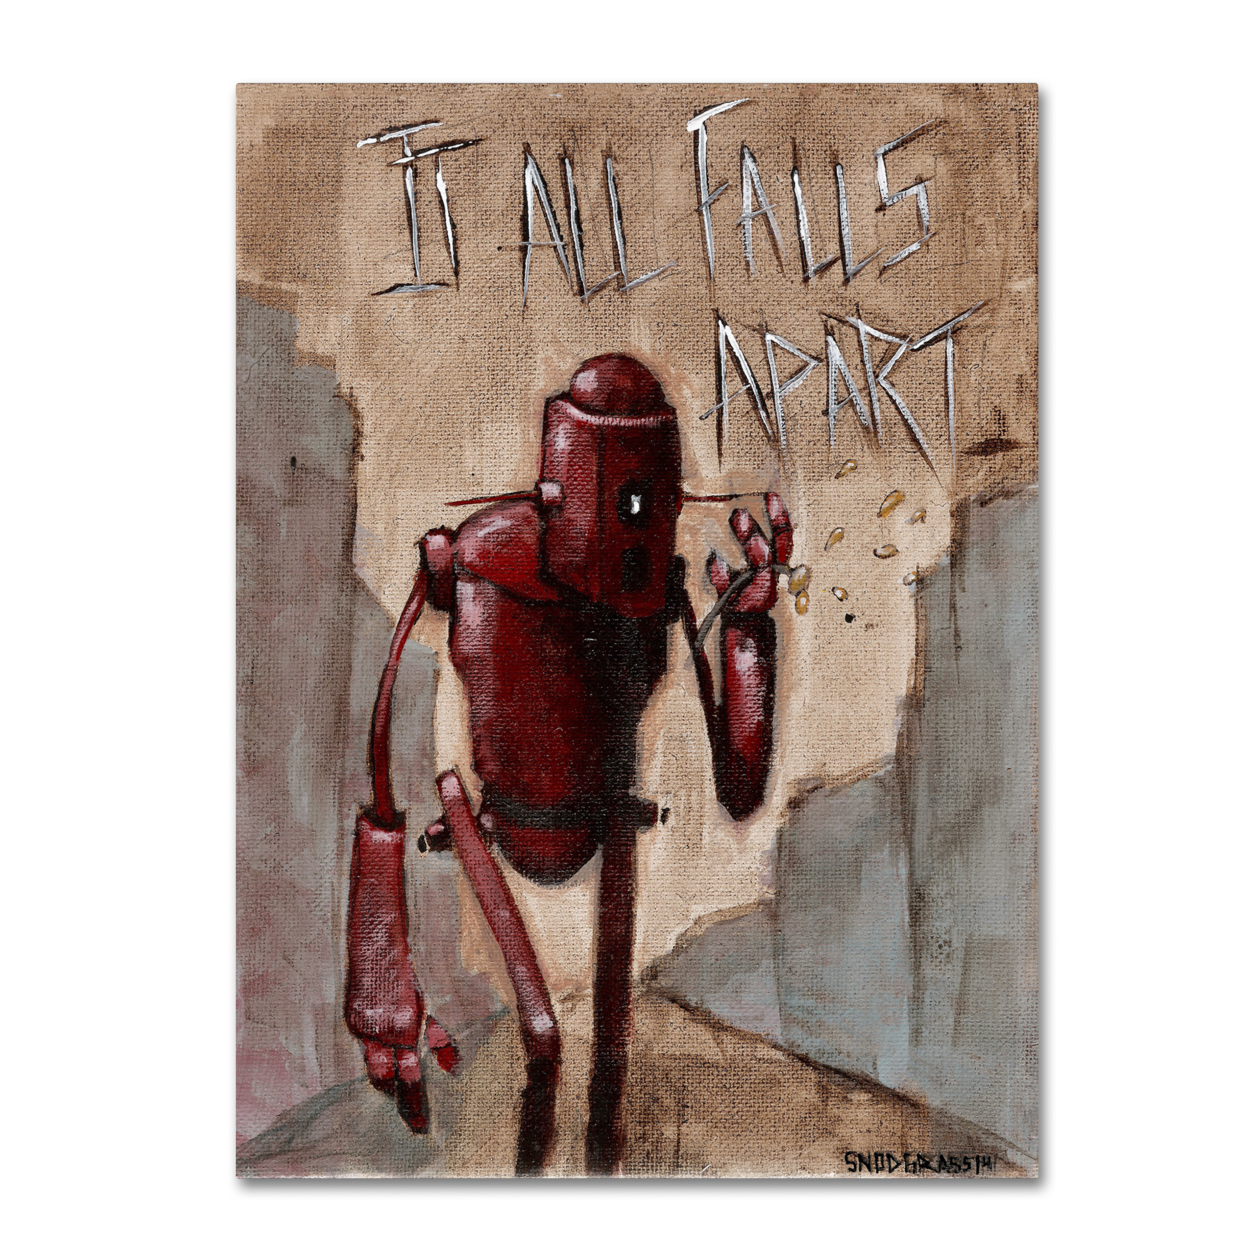 Craig Snodgrass 'It All Falls Apart' Canvas Art 18 X 24